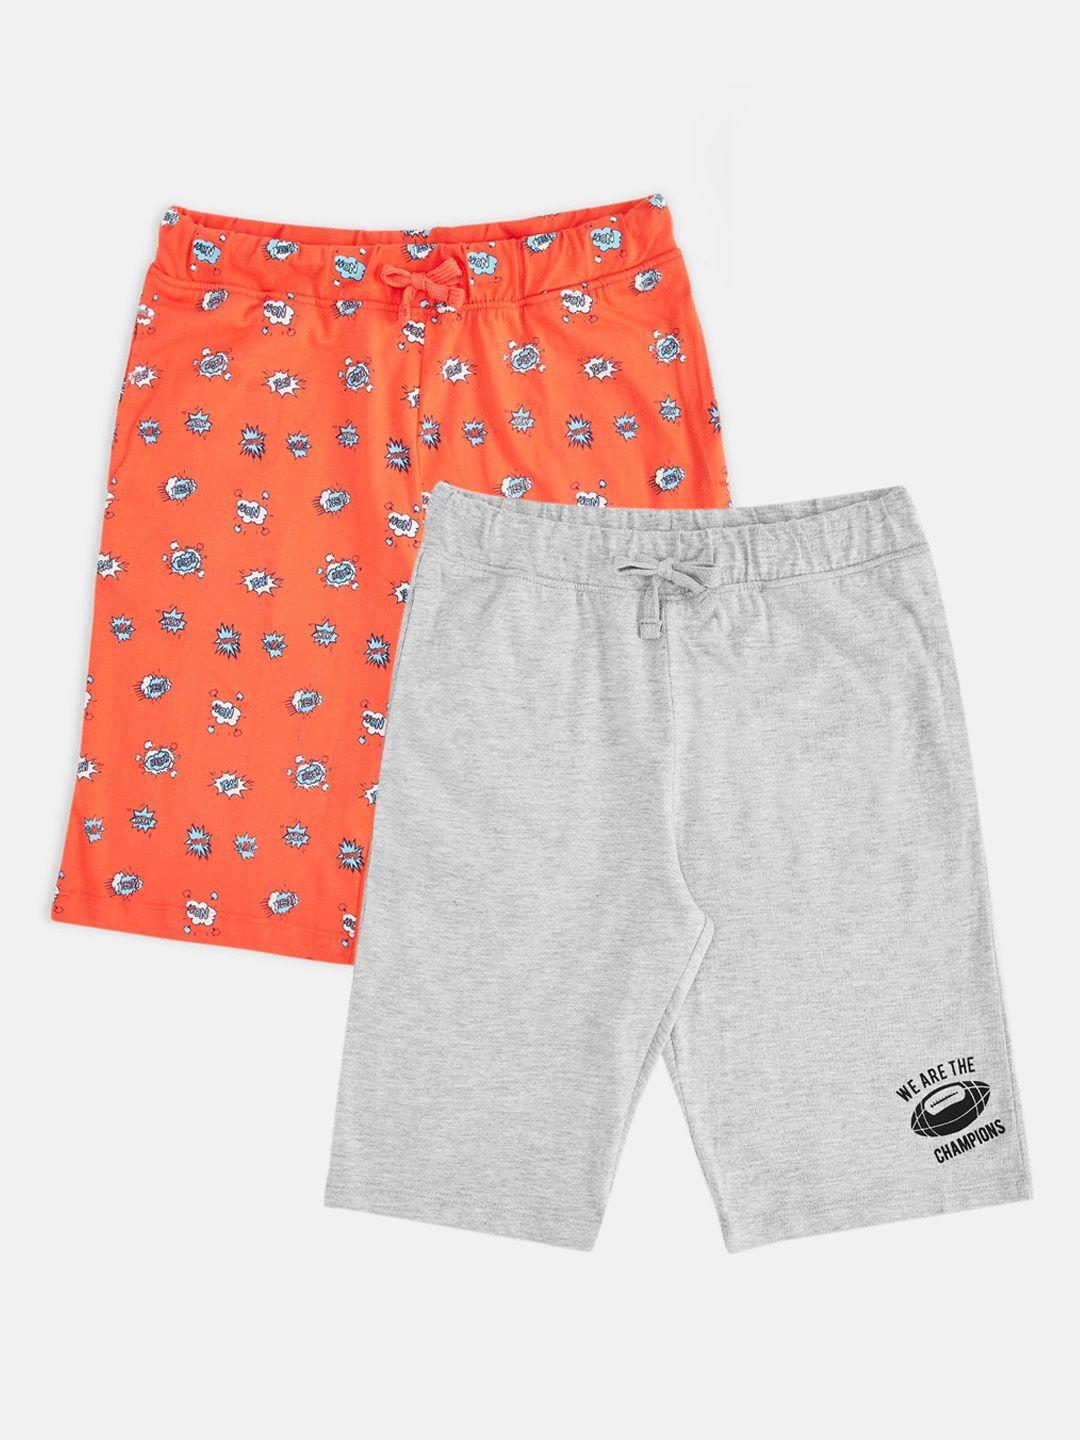 pantaloons junior boys orange and grey set of 2 printed shorts